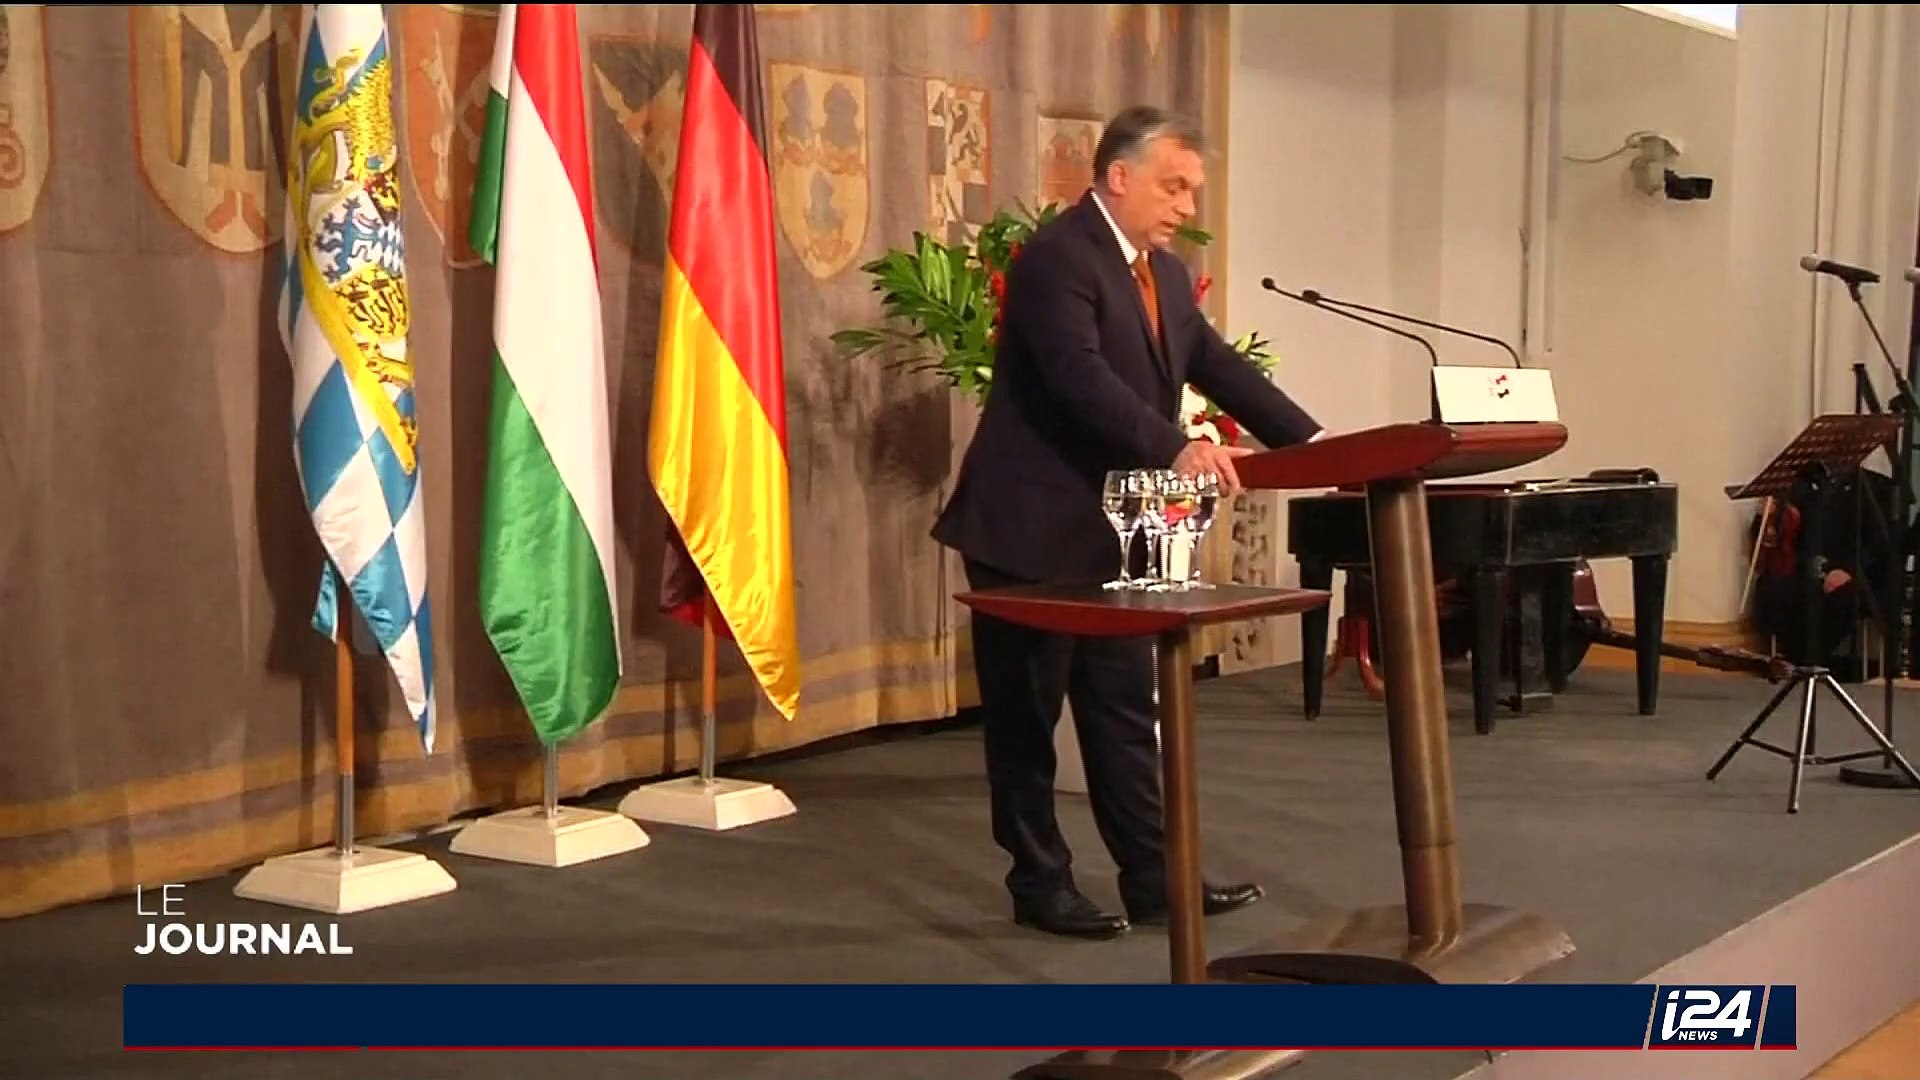 Hongrie: Viktor Orbán, un dirigeant nationaliste aux positions controversées